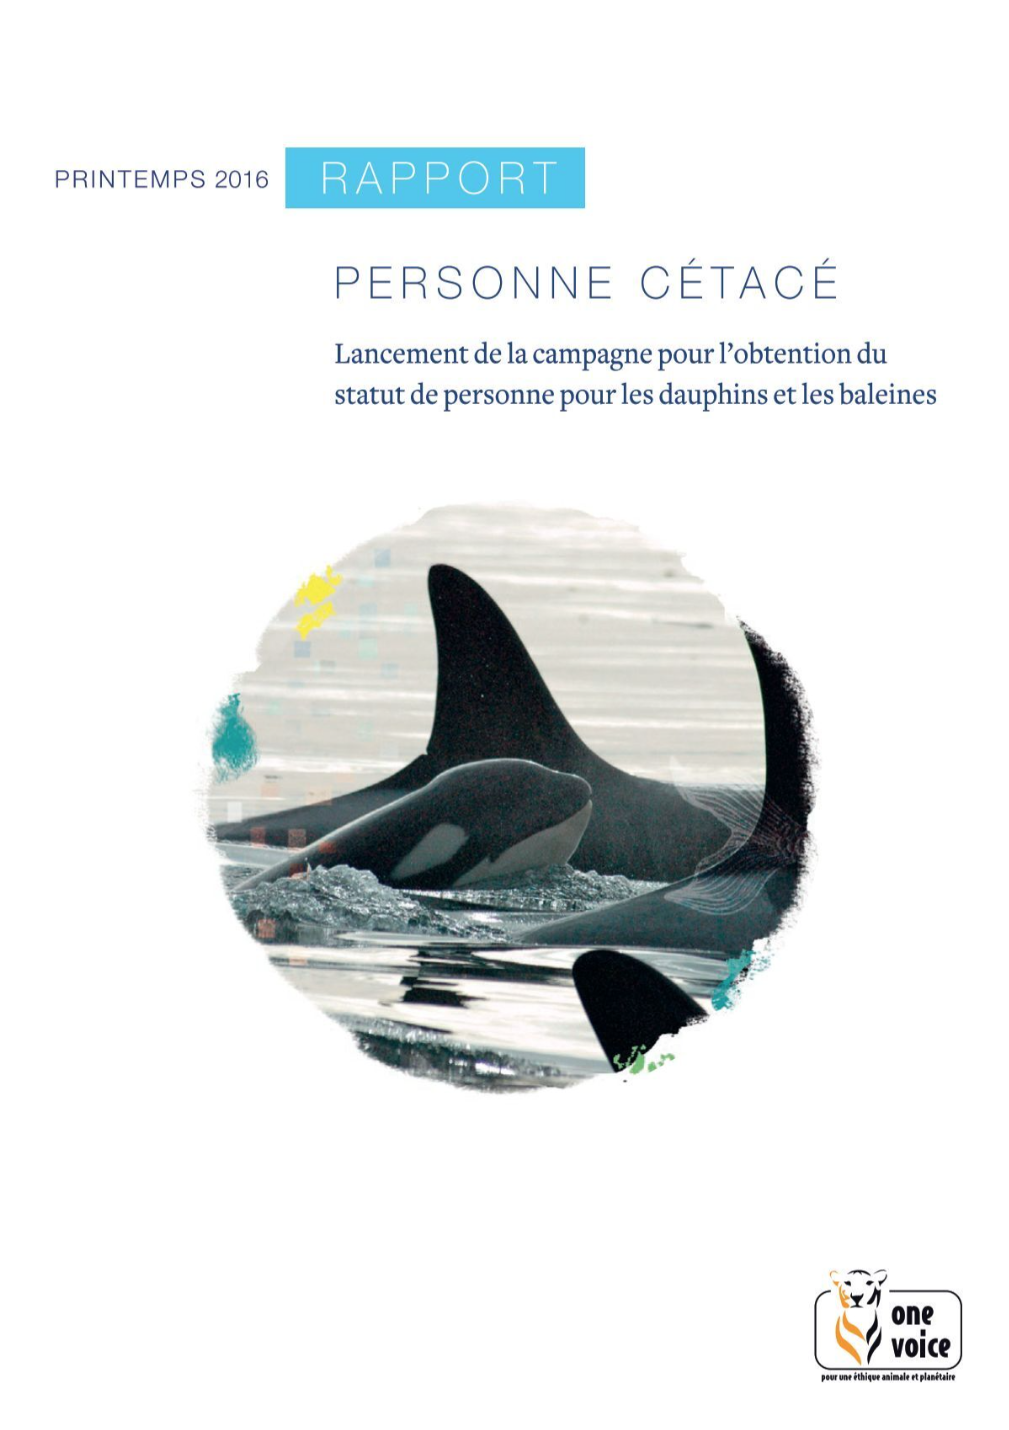 Lancement de la campagne pour l'obtention de personne pour les dauphins et les baleines